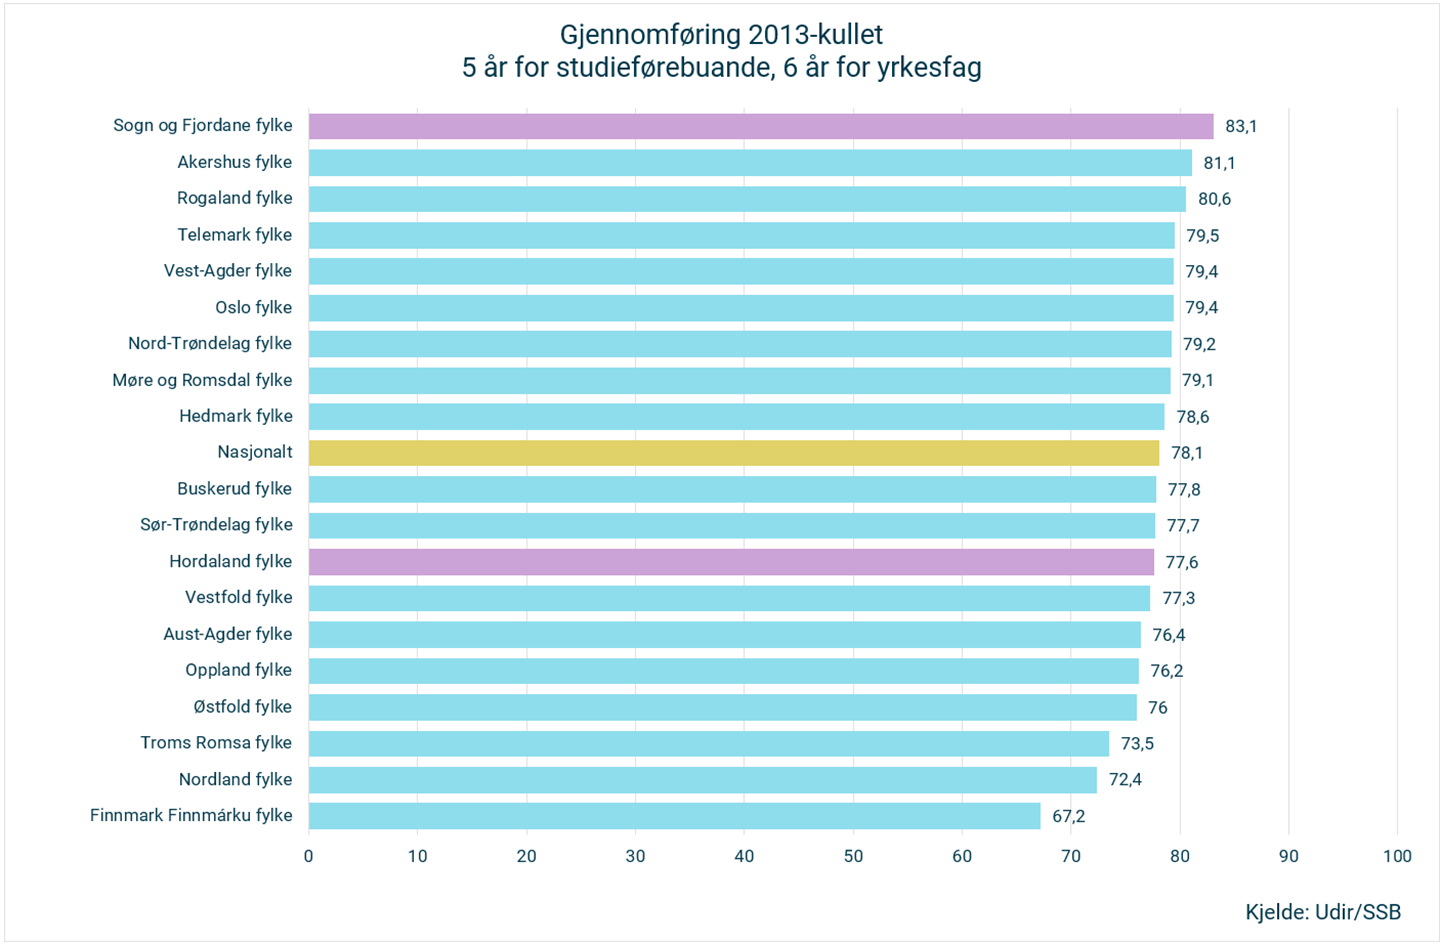 Søylediagram som viser gjennomføring for 2013-kullet. 5 år for studieførebuande og 6 år for yrkesfag delt på alle fylke og landet. Kjelde: Udir/SSB